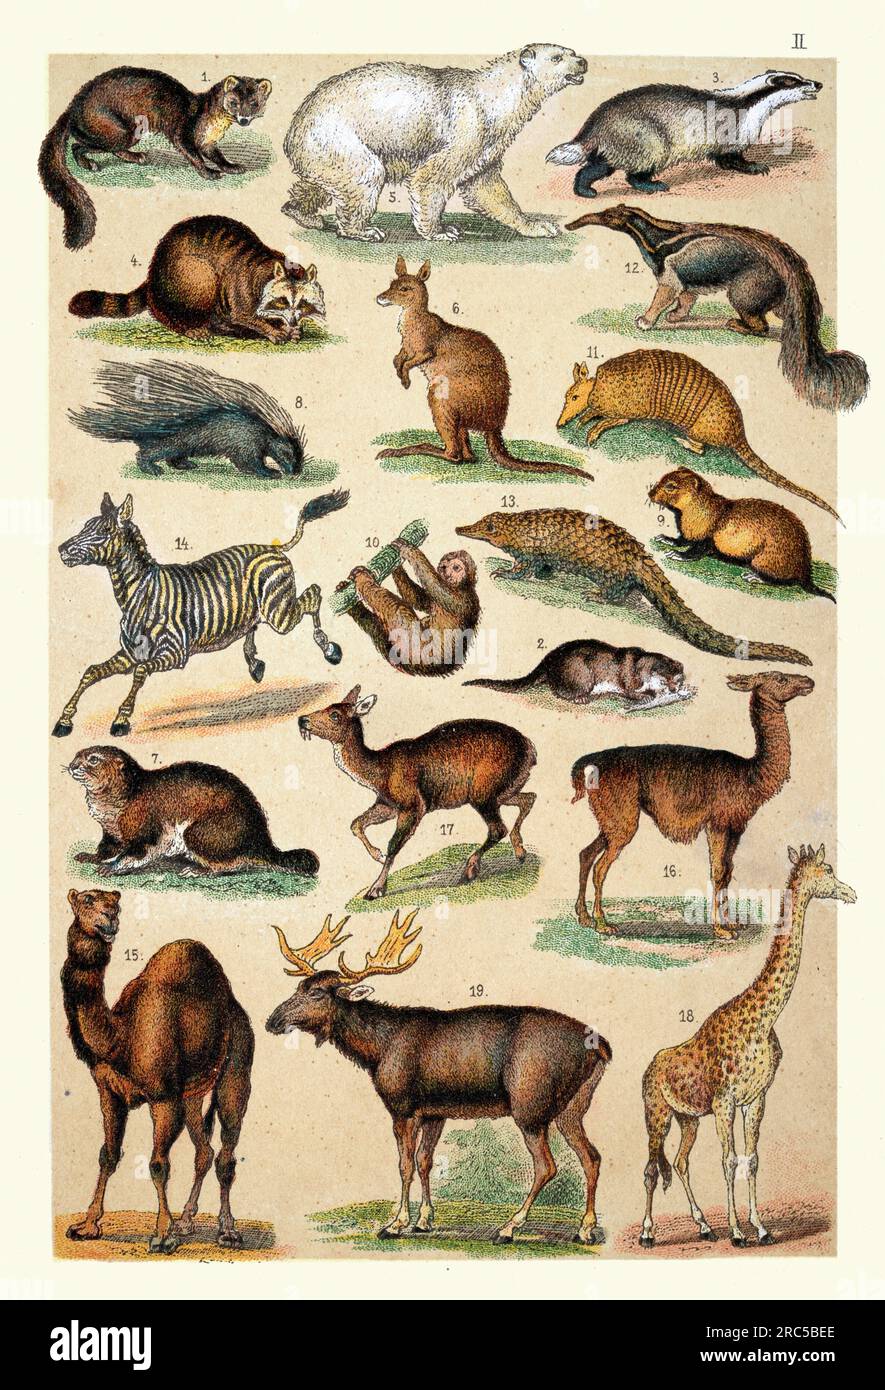 Illustrazione d'epoca di animali selvatici, 1 martora d'albero, 2 lontre, 3 Badger, 4 Racoon, 5 orsi polari, 6 canguri giganti, 7 marmotte, 8 porcospini, 9 criceti, 10 Foto Stock